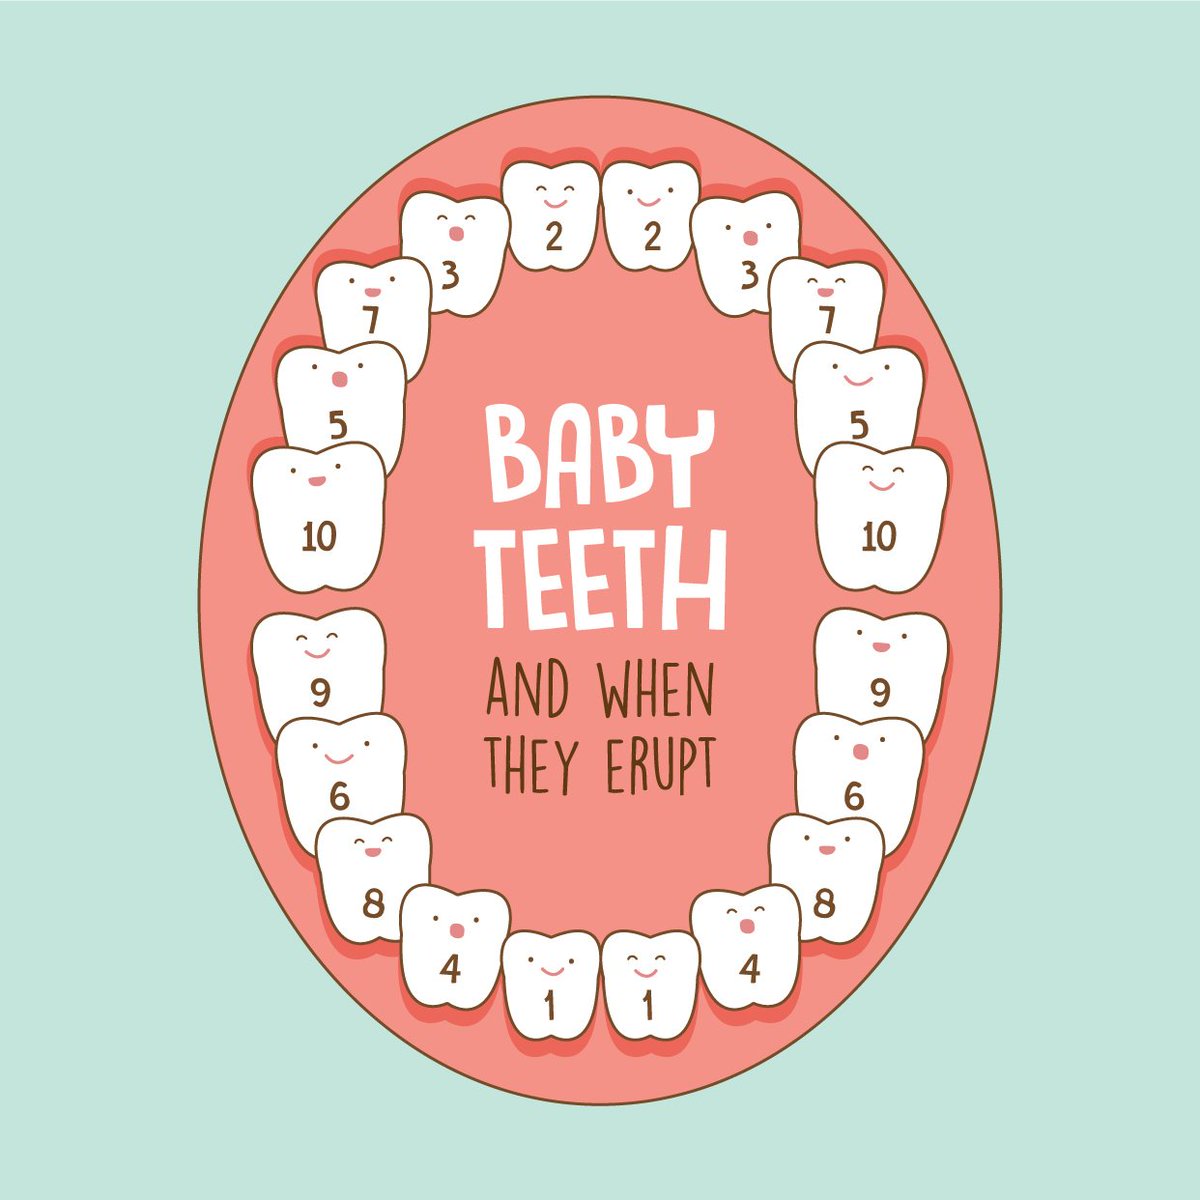 baby teeth chart